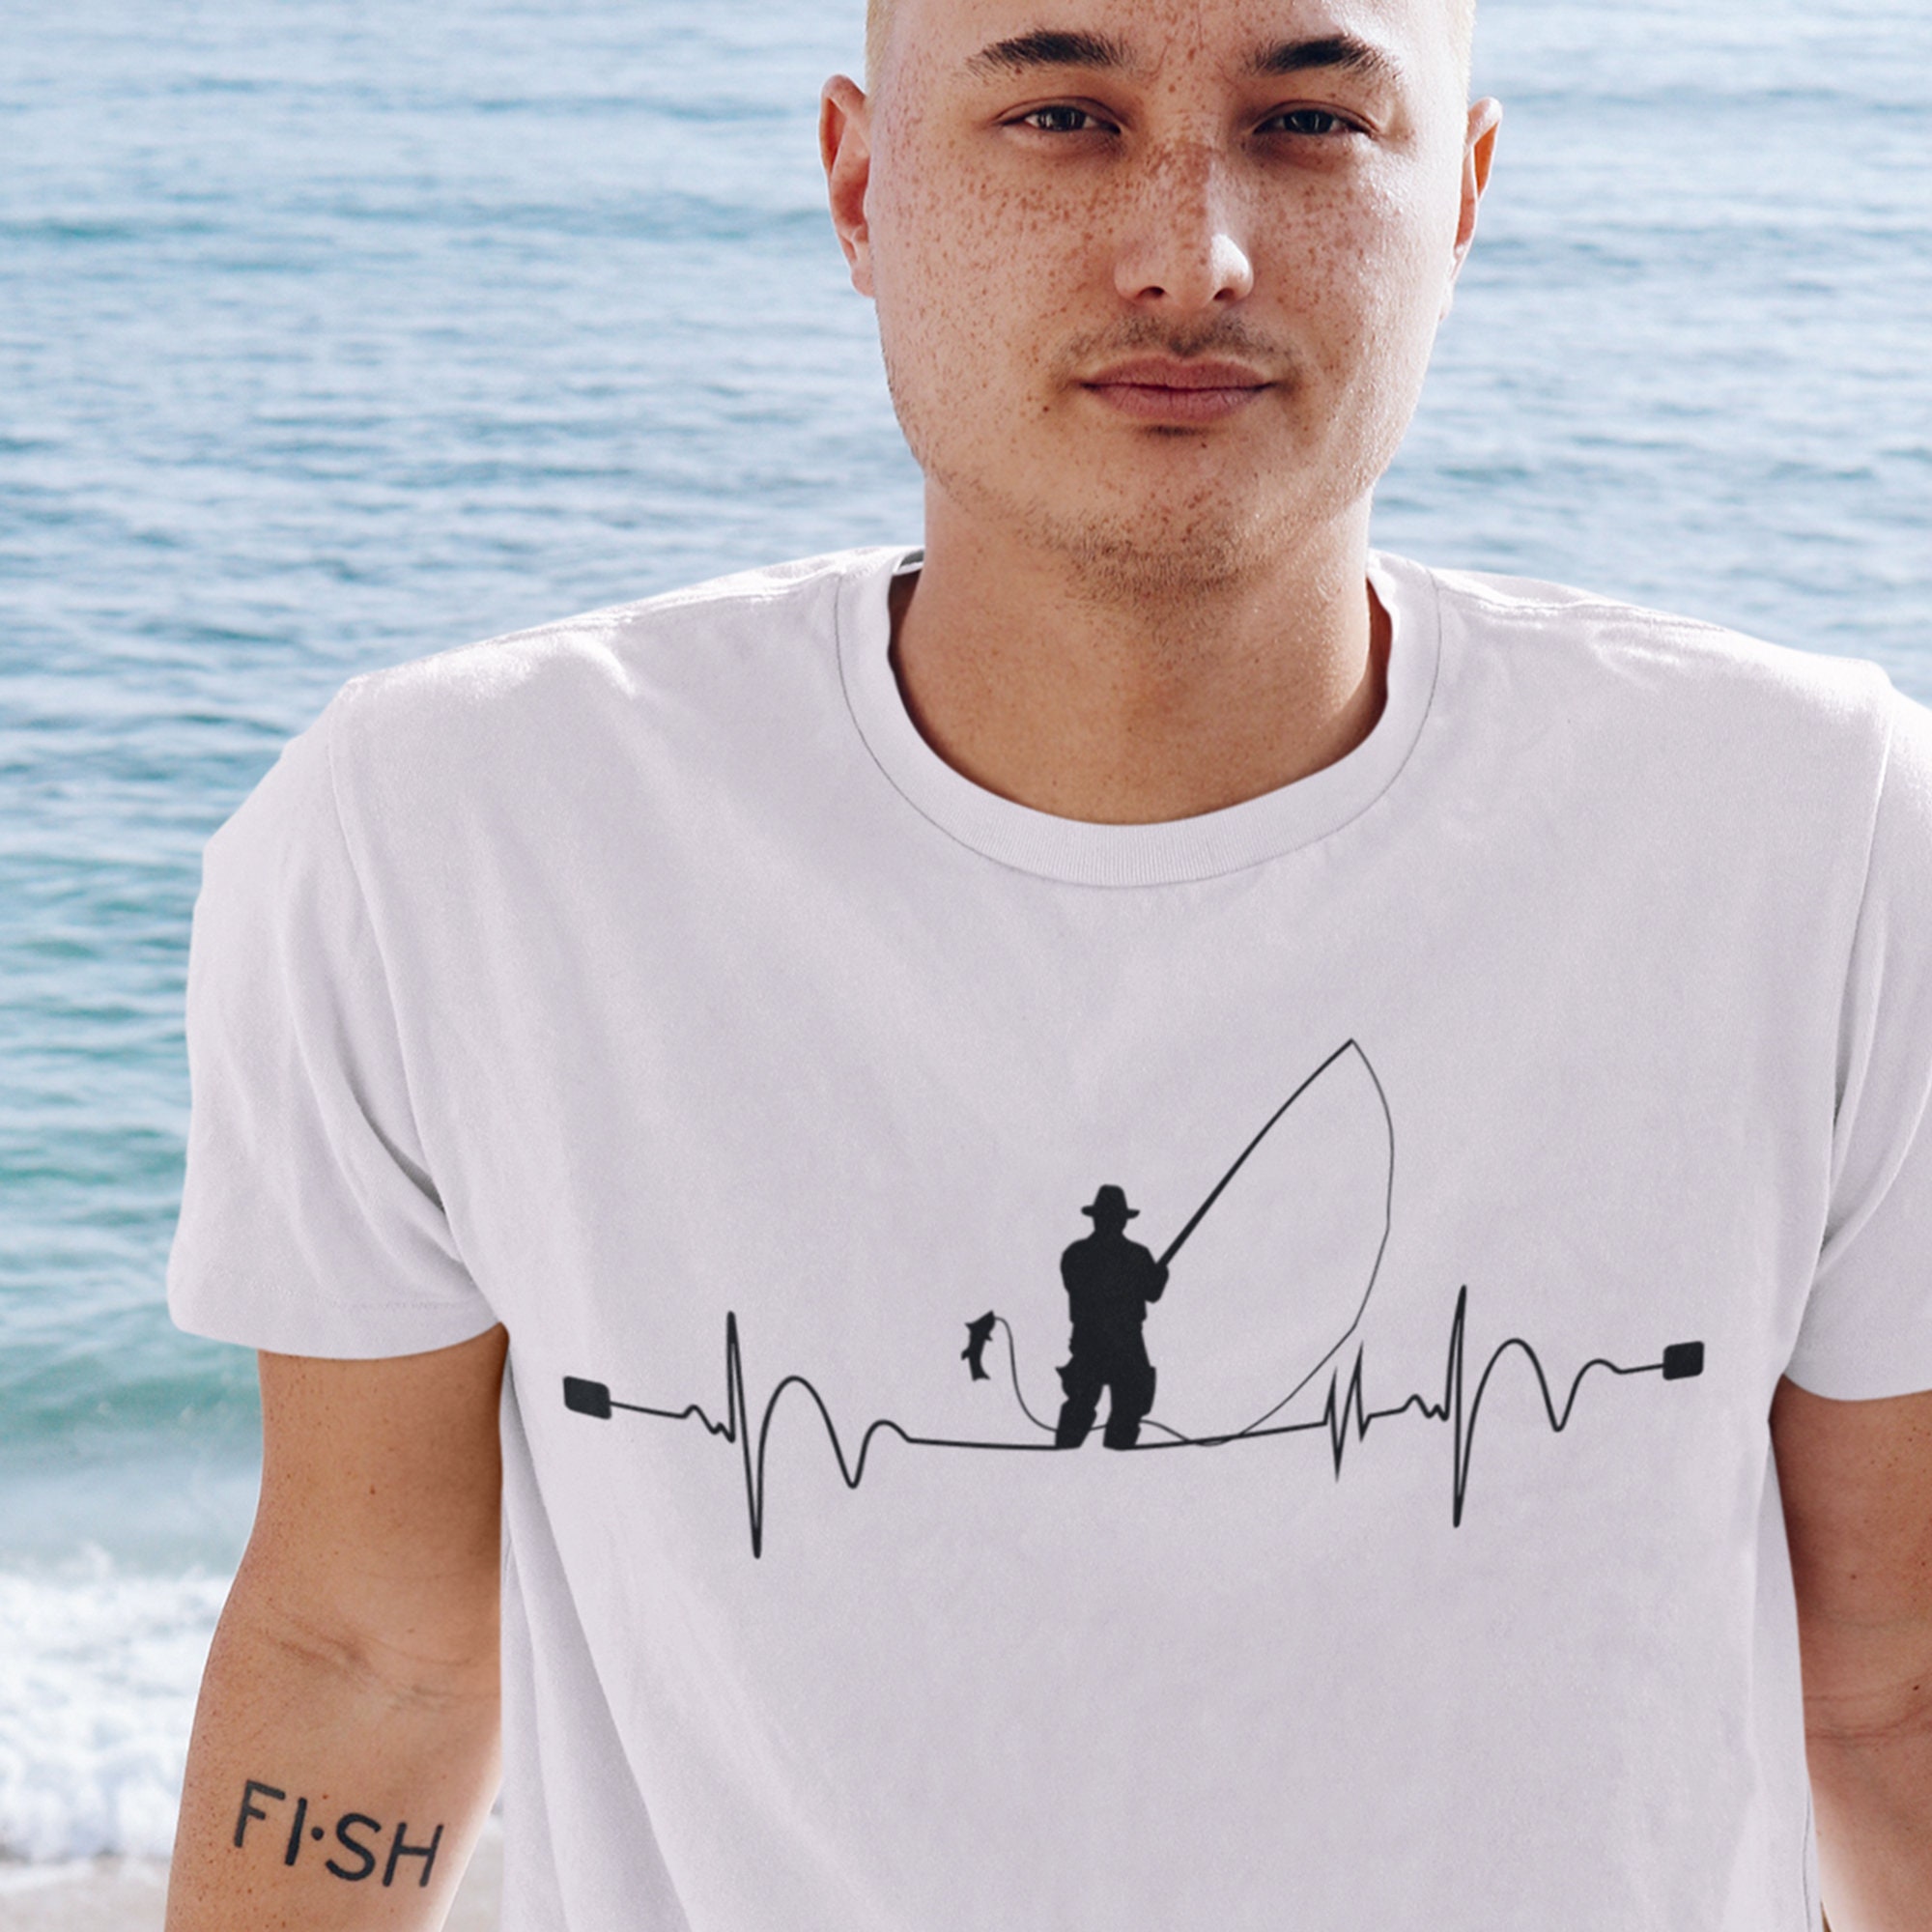 Funny Fishing T-shirt Fisherman Heart Beat Pulse Fishing Gifts